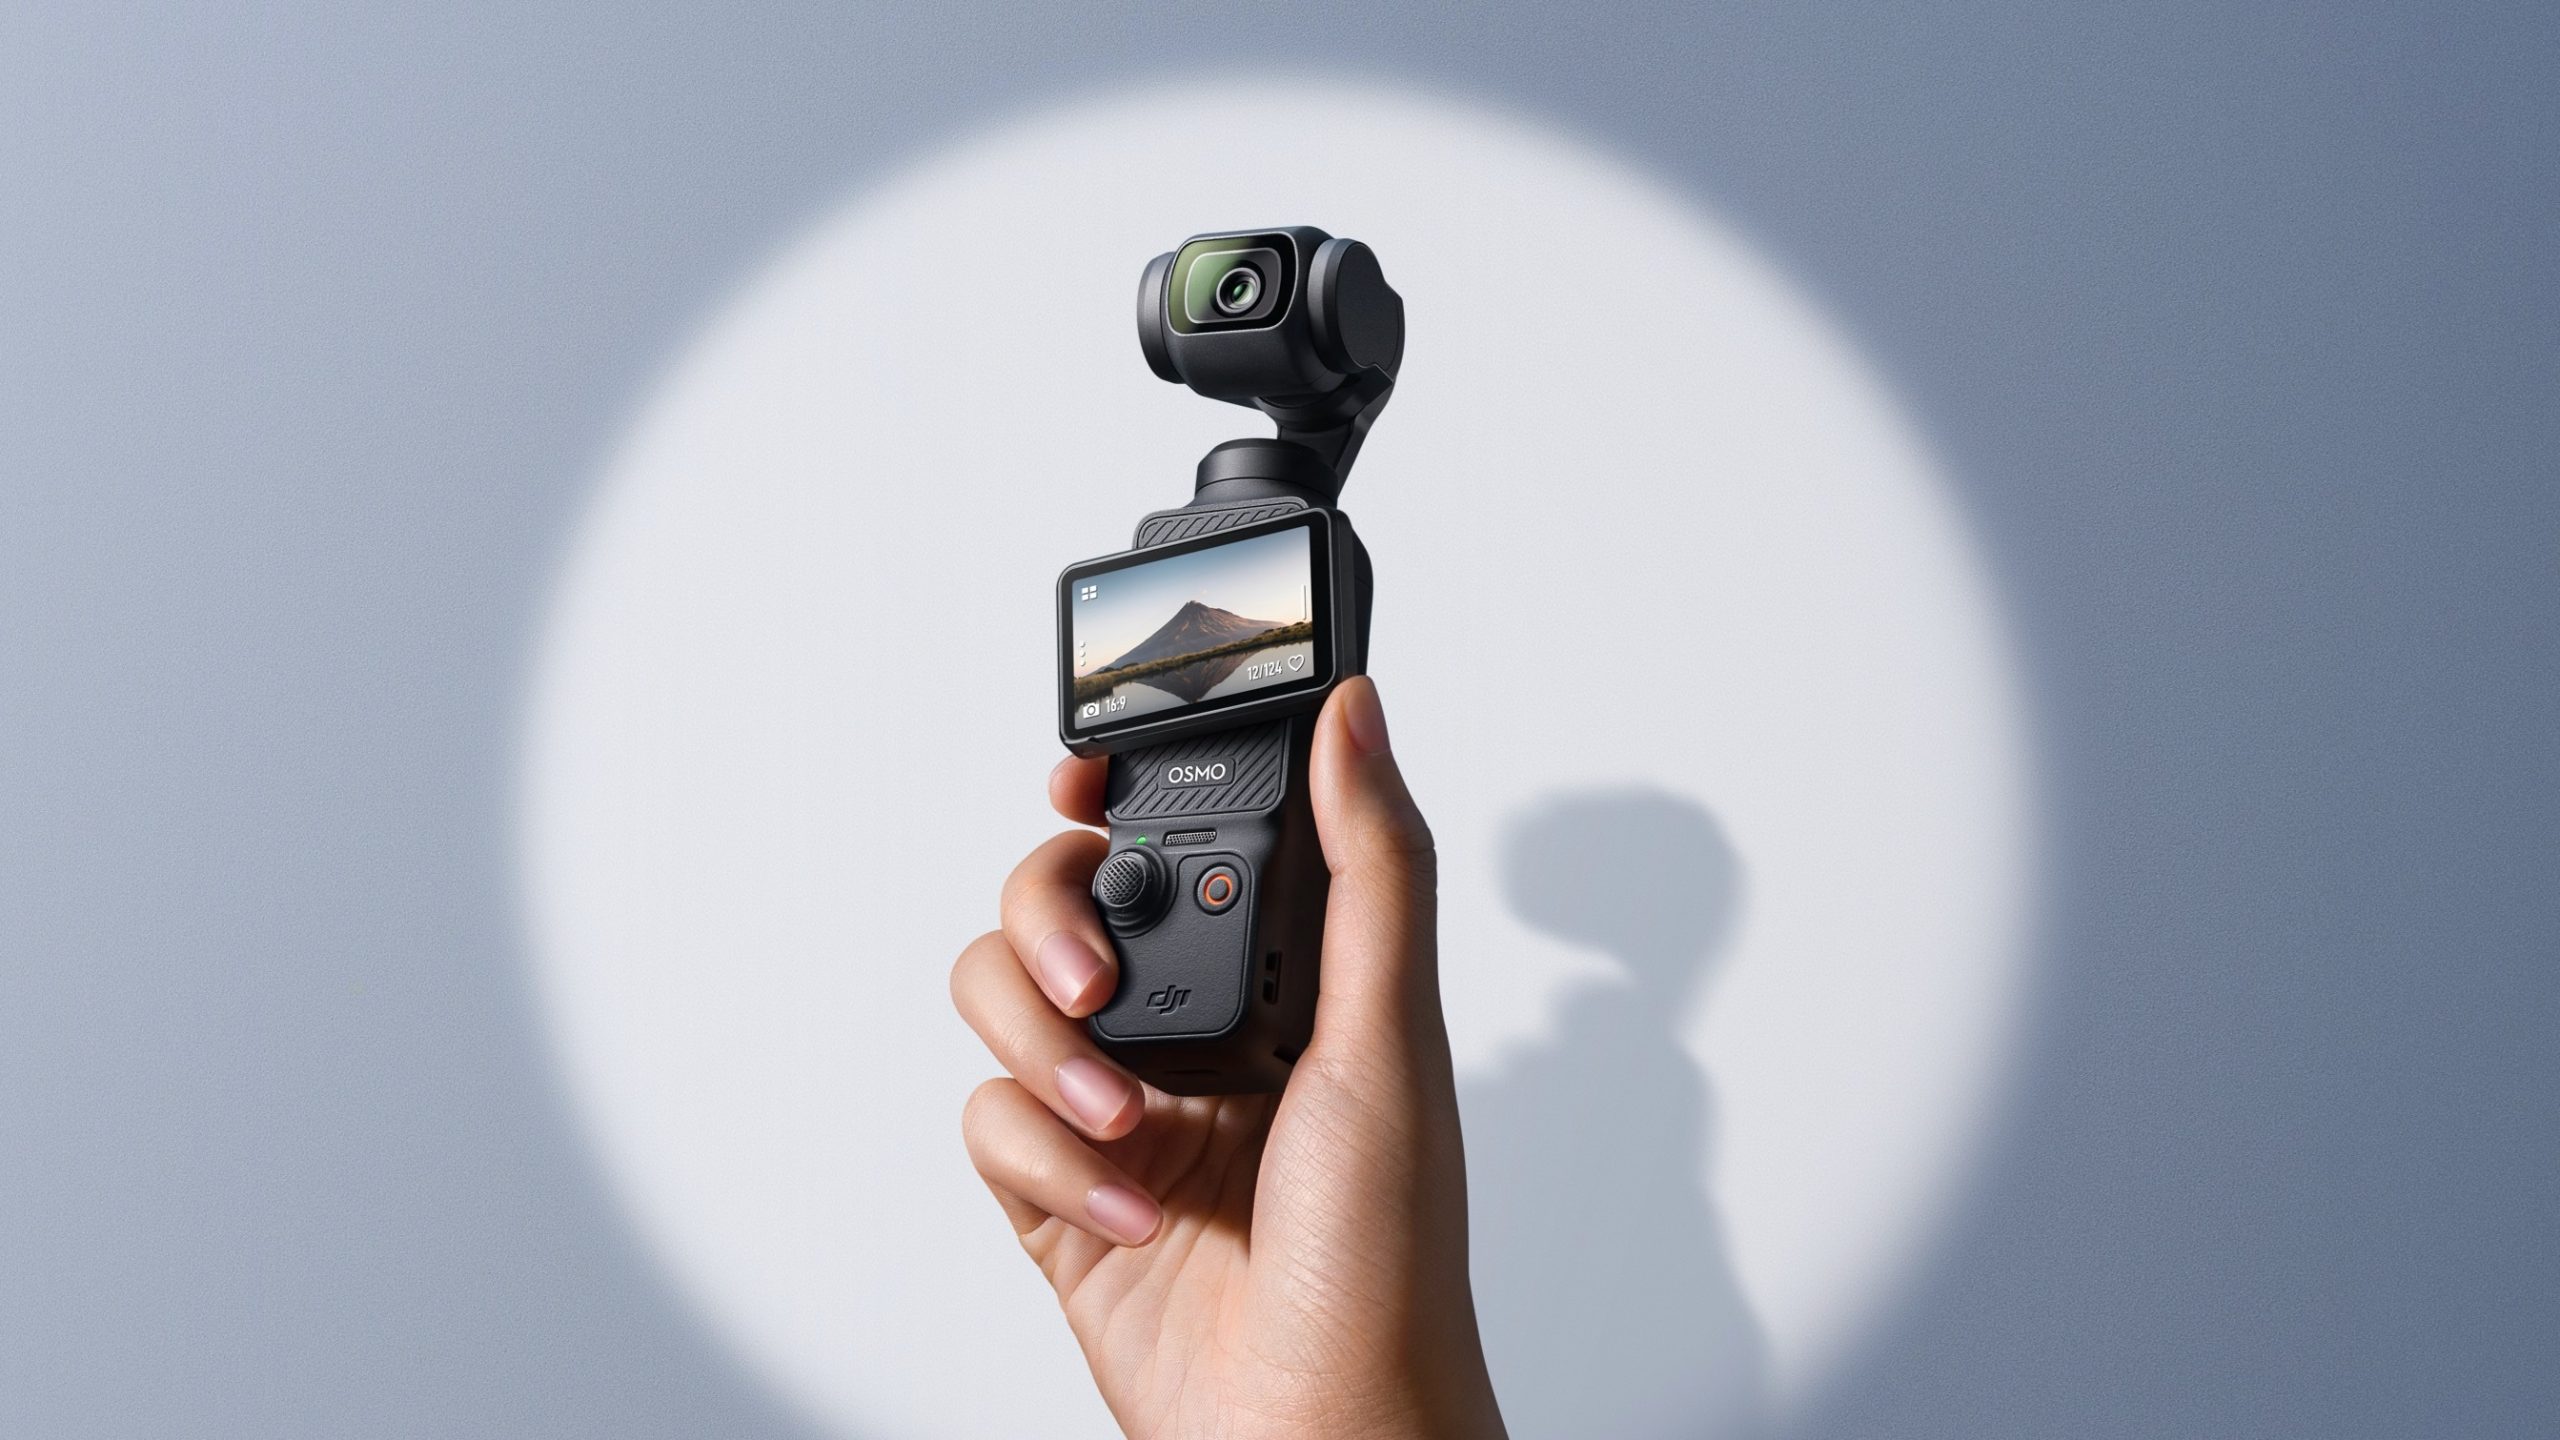 DJI Osmo Pocket 3 is a 1″ CMOS compact gimbal camera